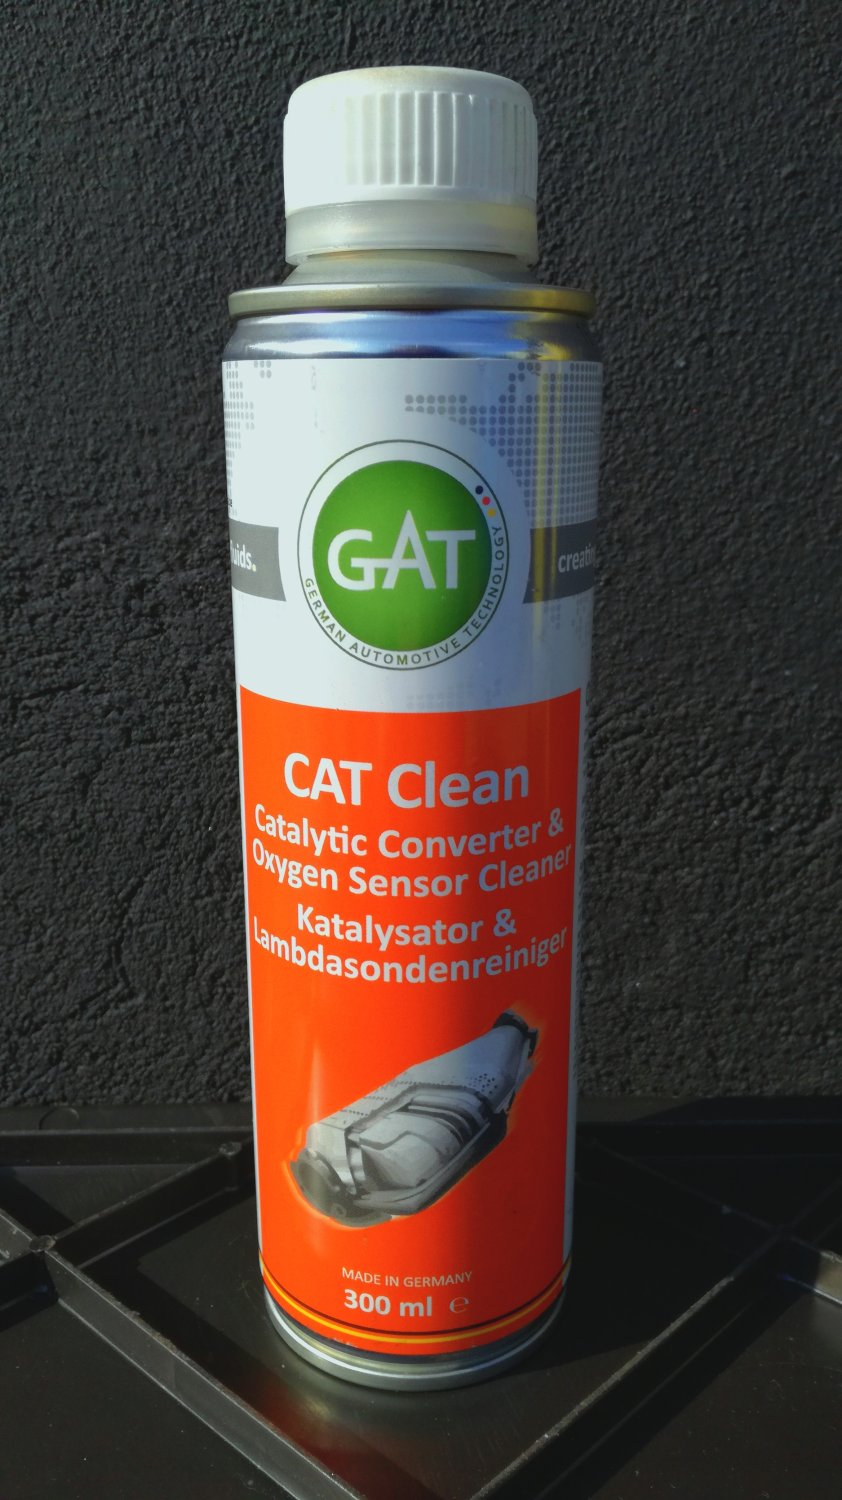 CAT CLEAN - Catalytic Converter and Oxgen Sensor